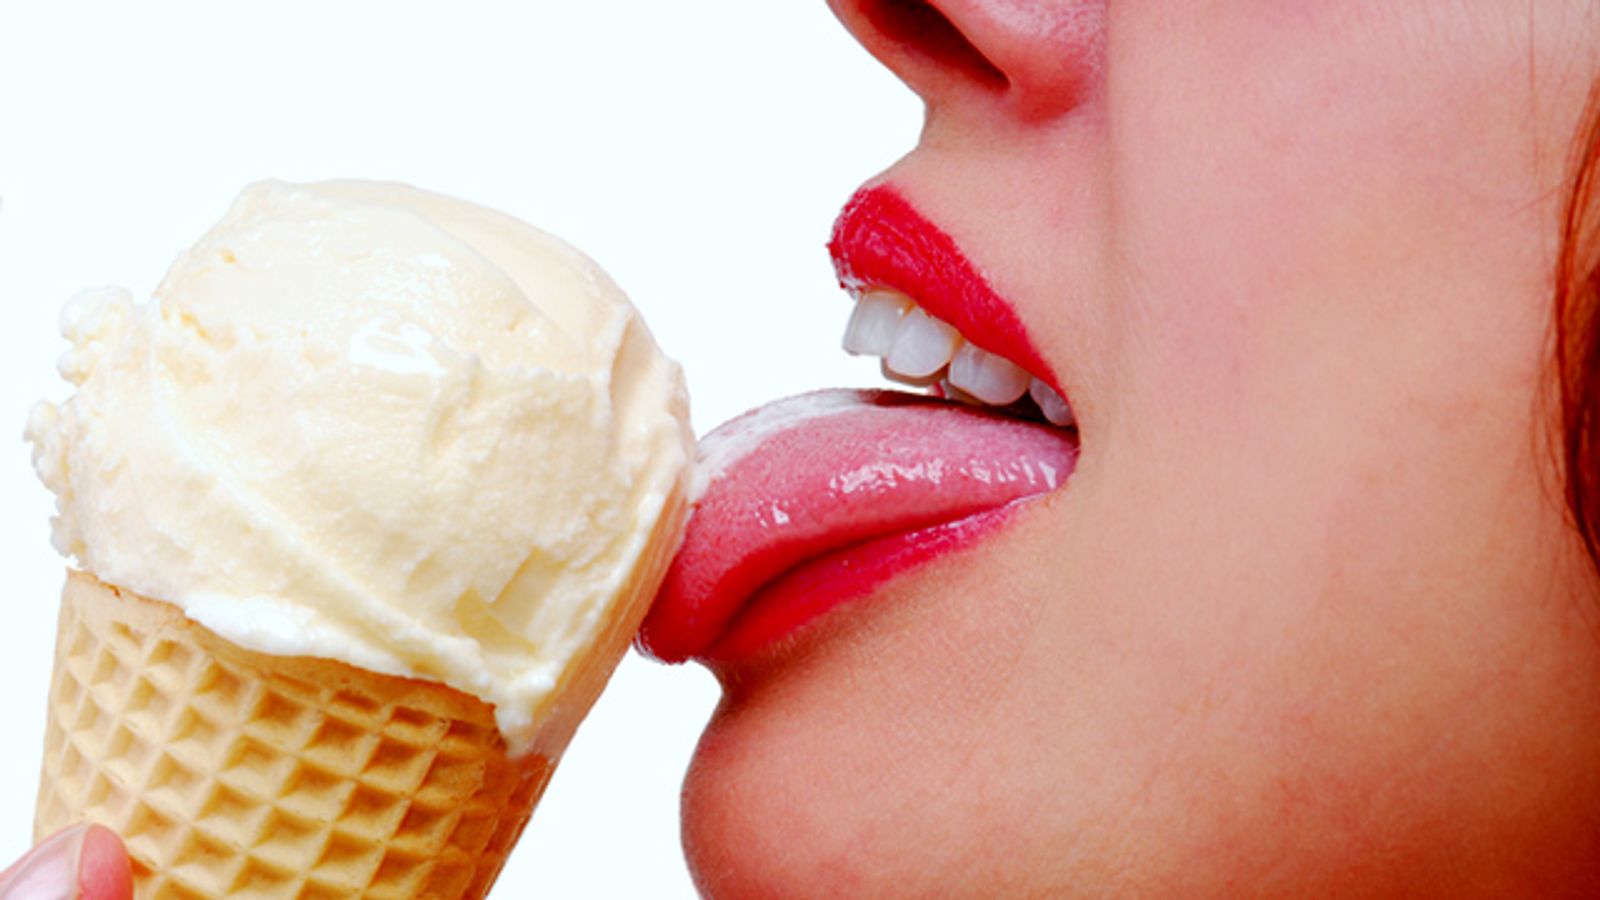 Forget Viagra: Eat Ice Cream